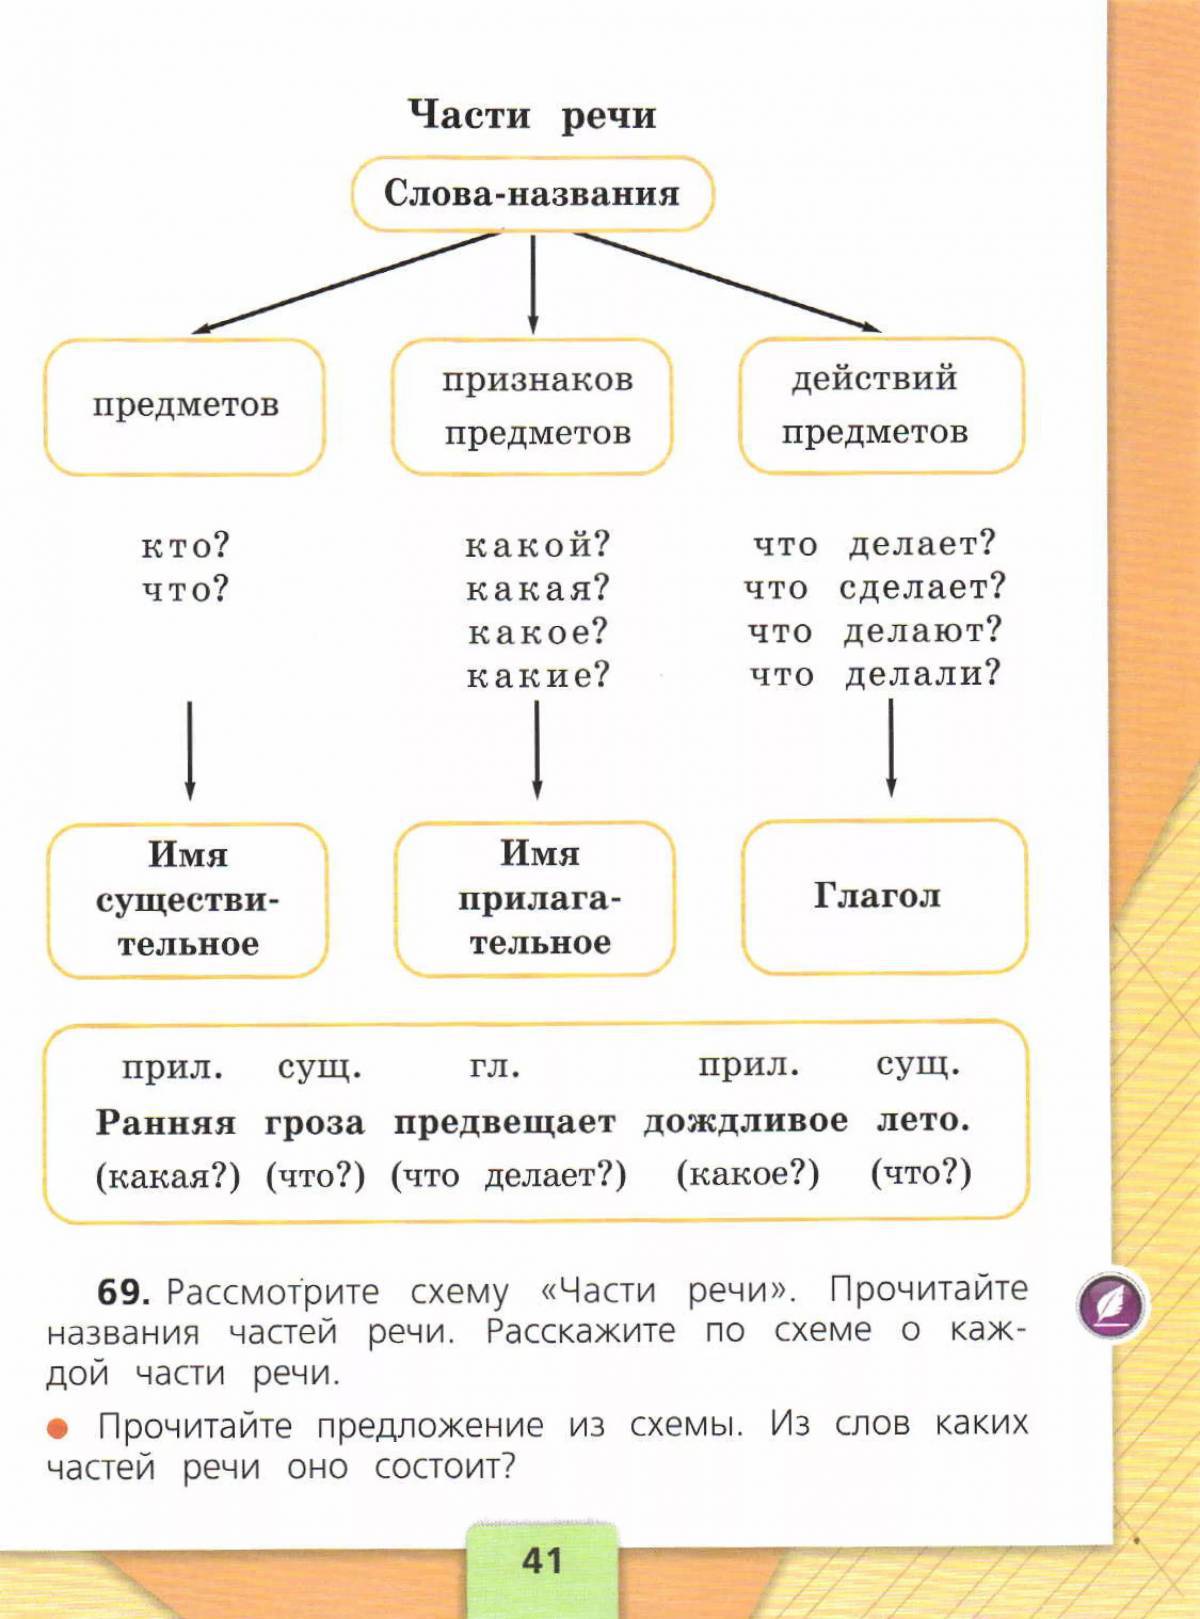 По русскому языку 3 класс части речи #27